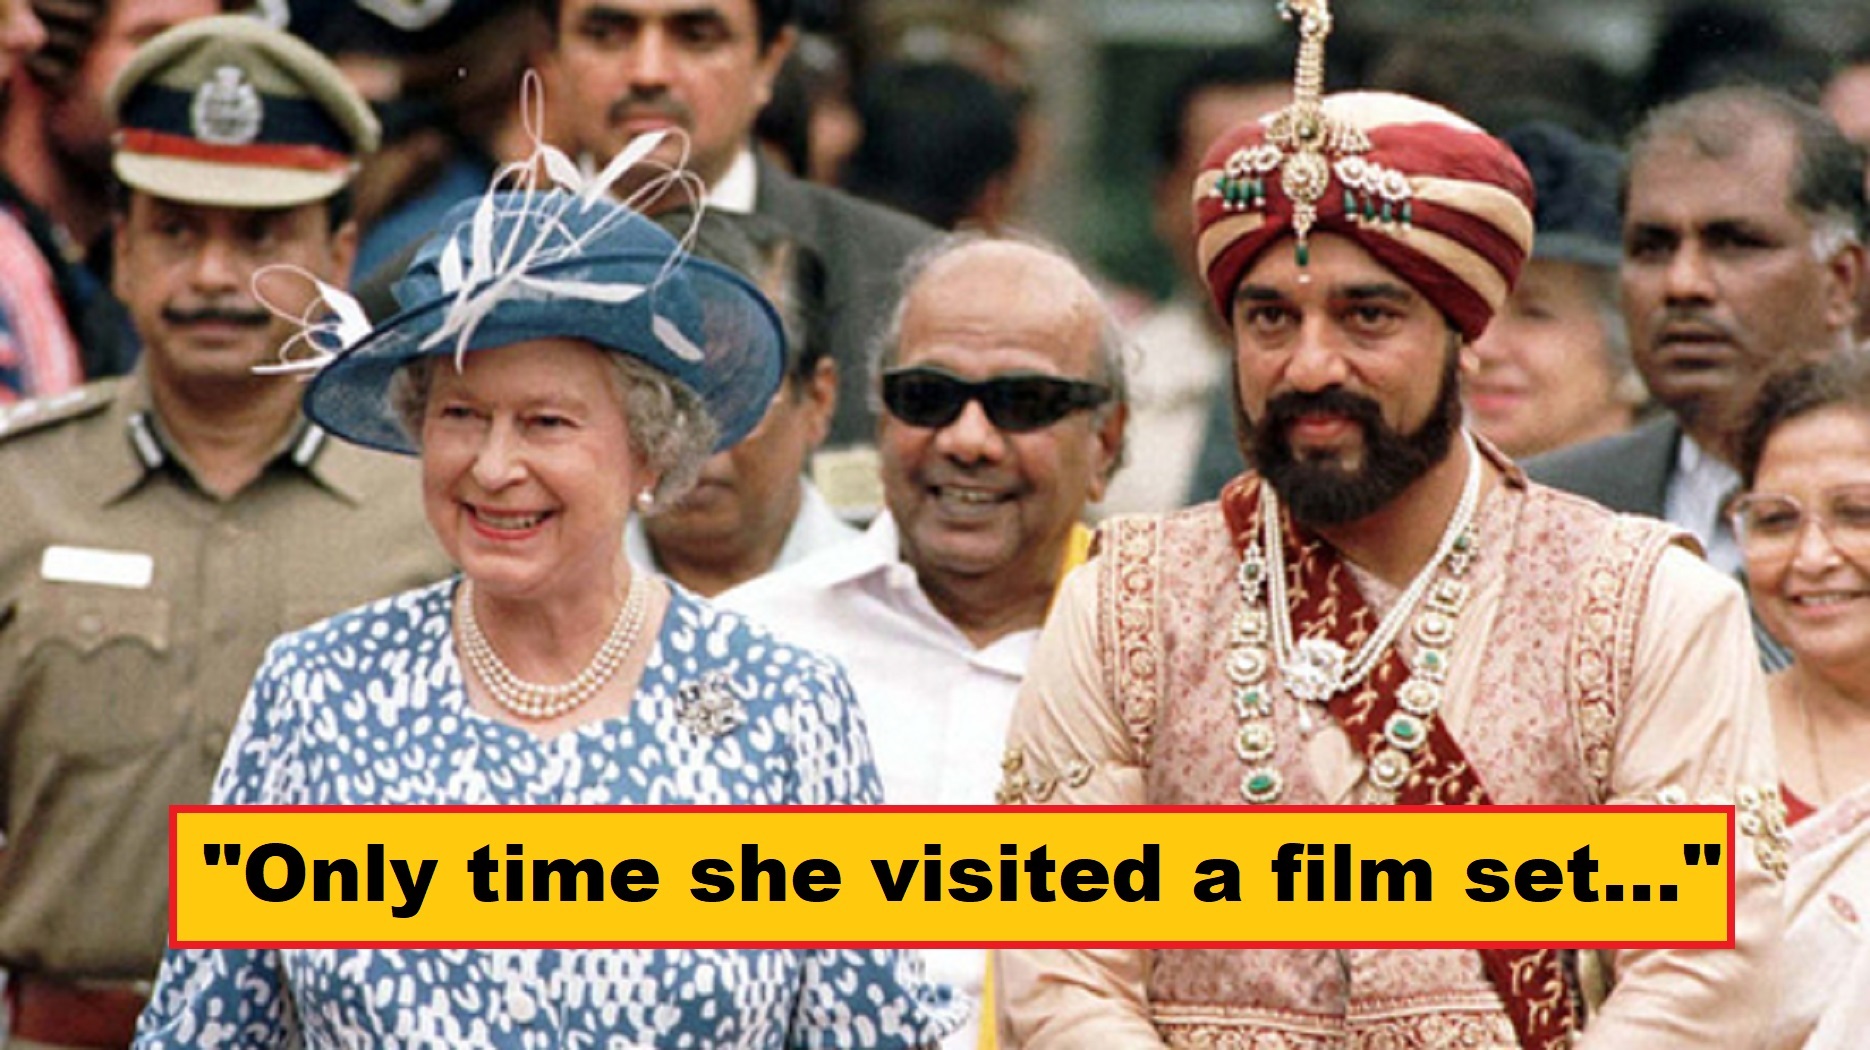 Kamal Haasan Remembers Queen Elizabeth By Recalling Her Visit To His Film Marudhanayagam’s Set